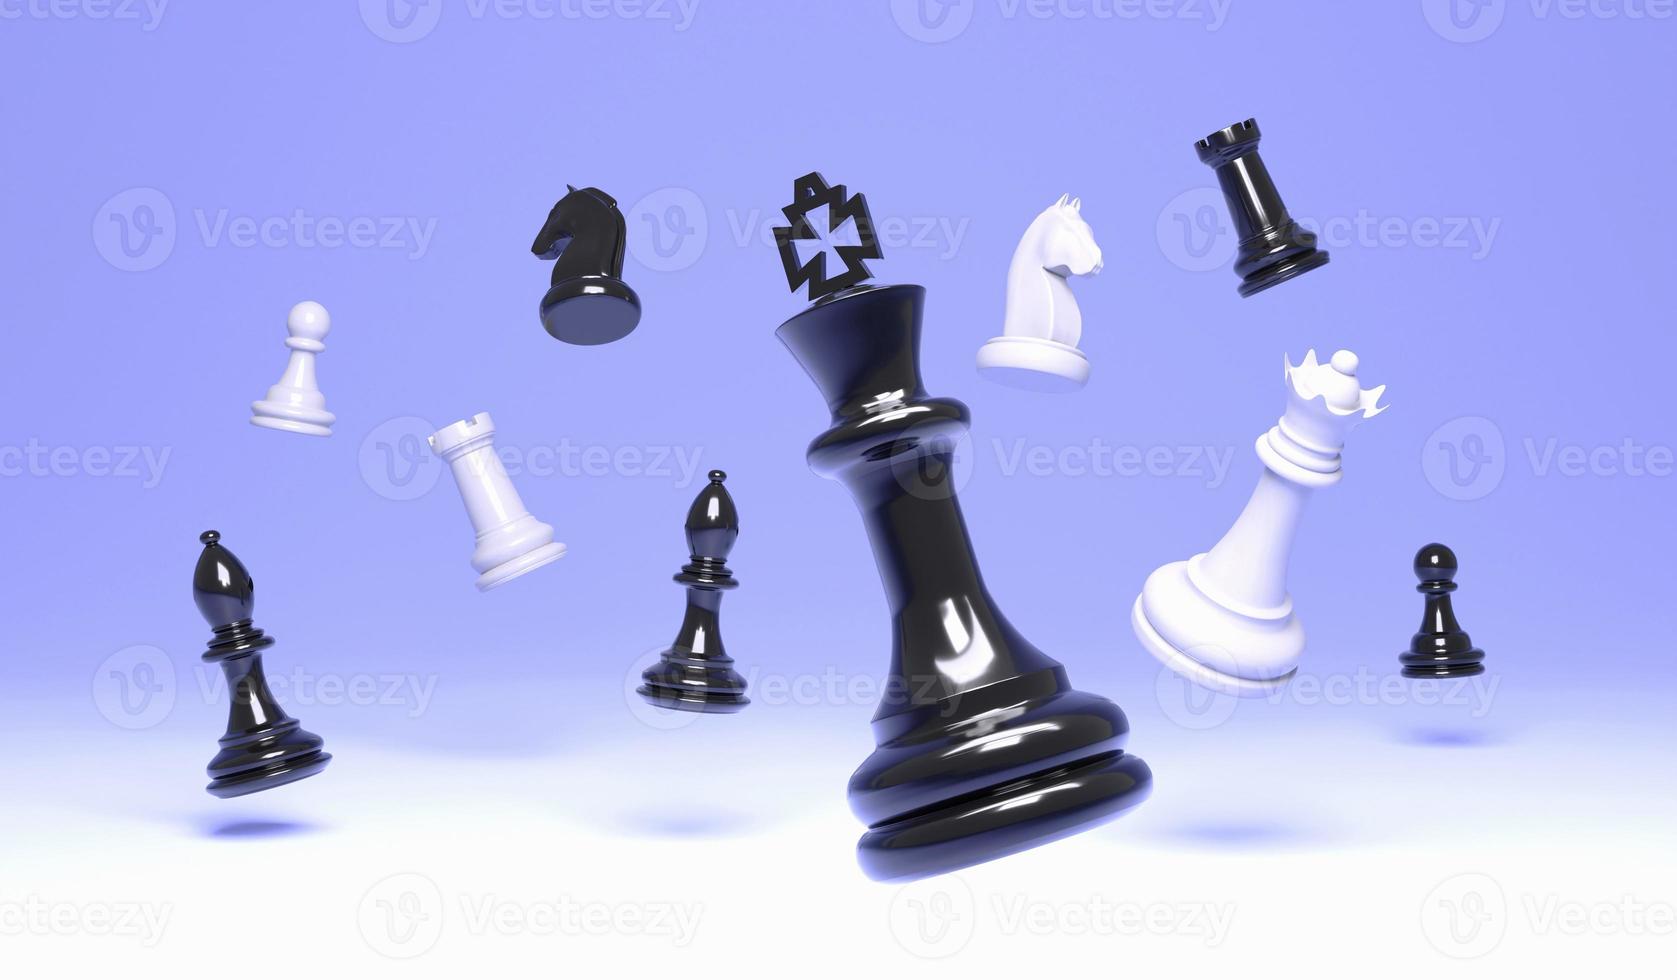 3D-schaken illustratie koning, koningin bisschop en pion paard toren op blauwe achtergrond, 3D-rendering Schaken concept achtergrond foto